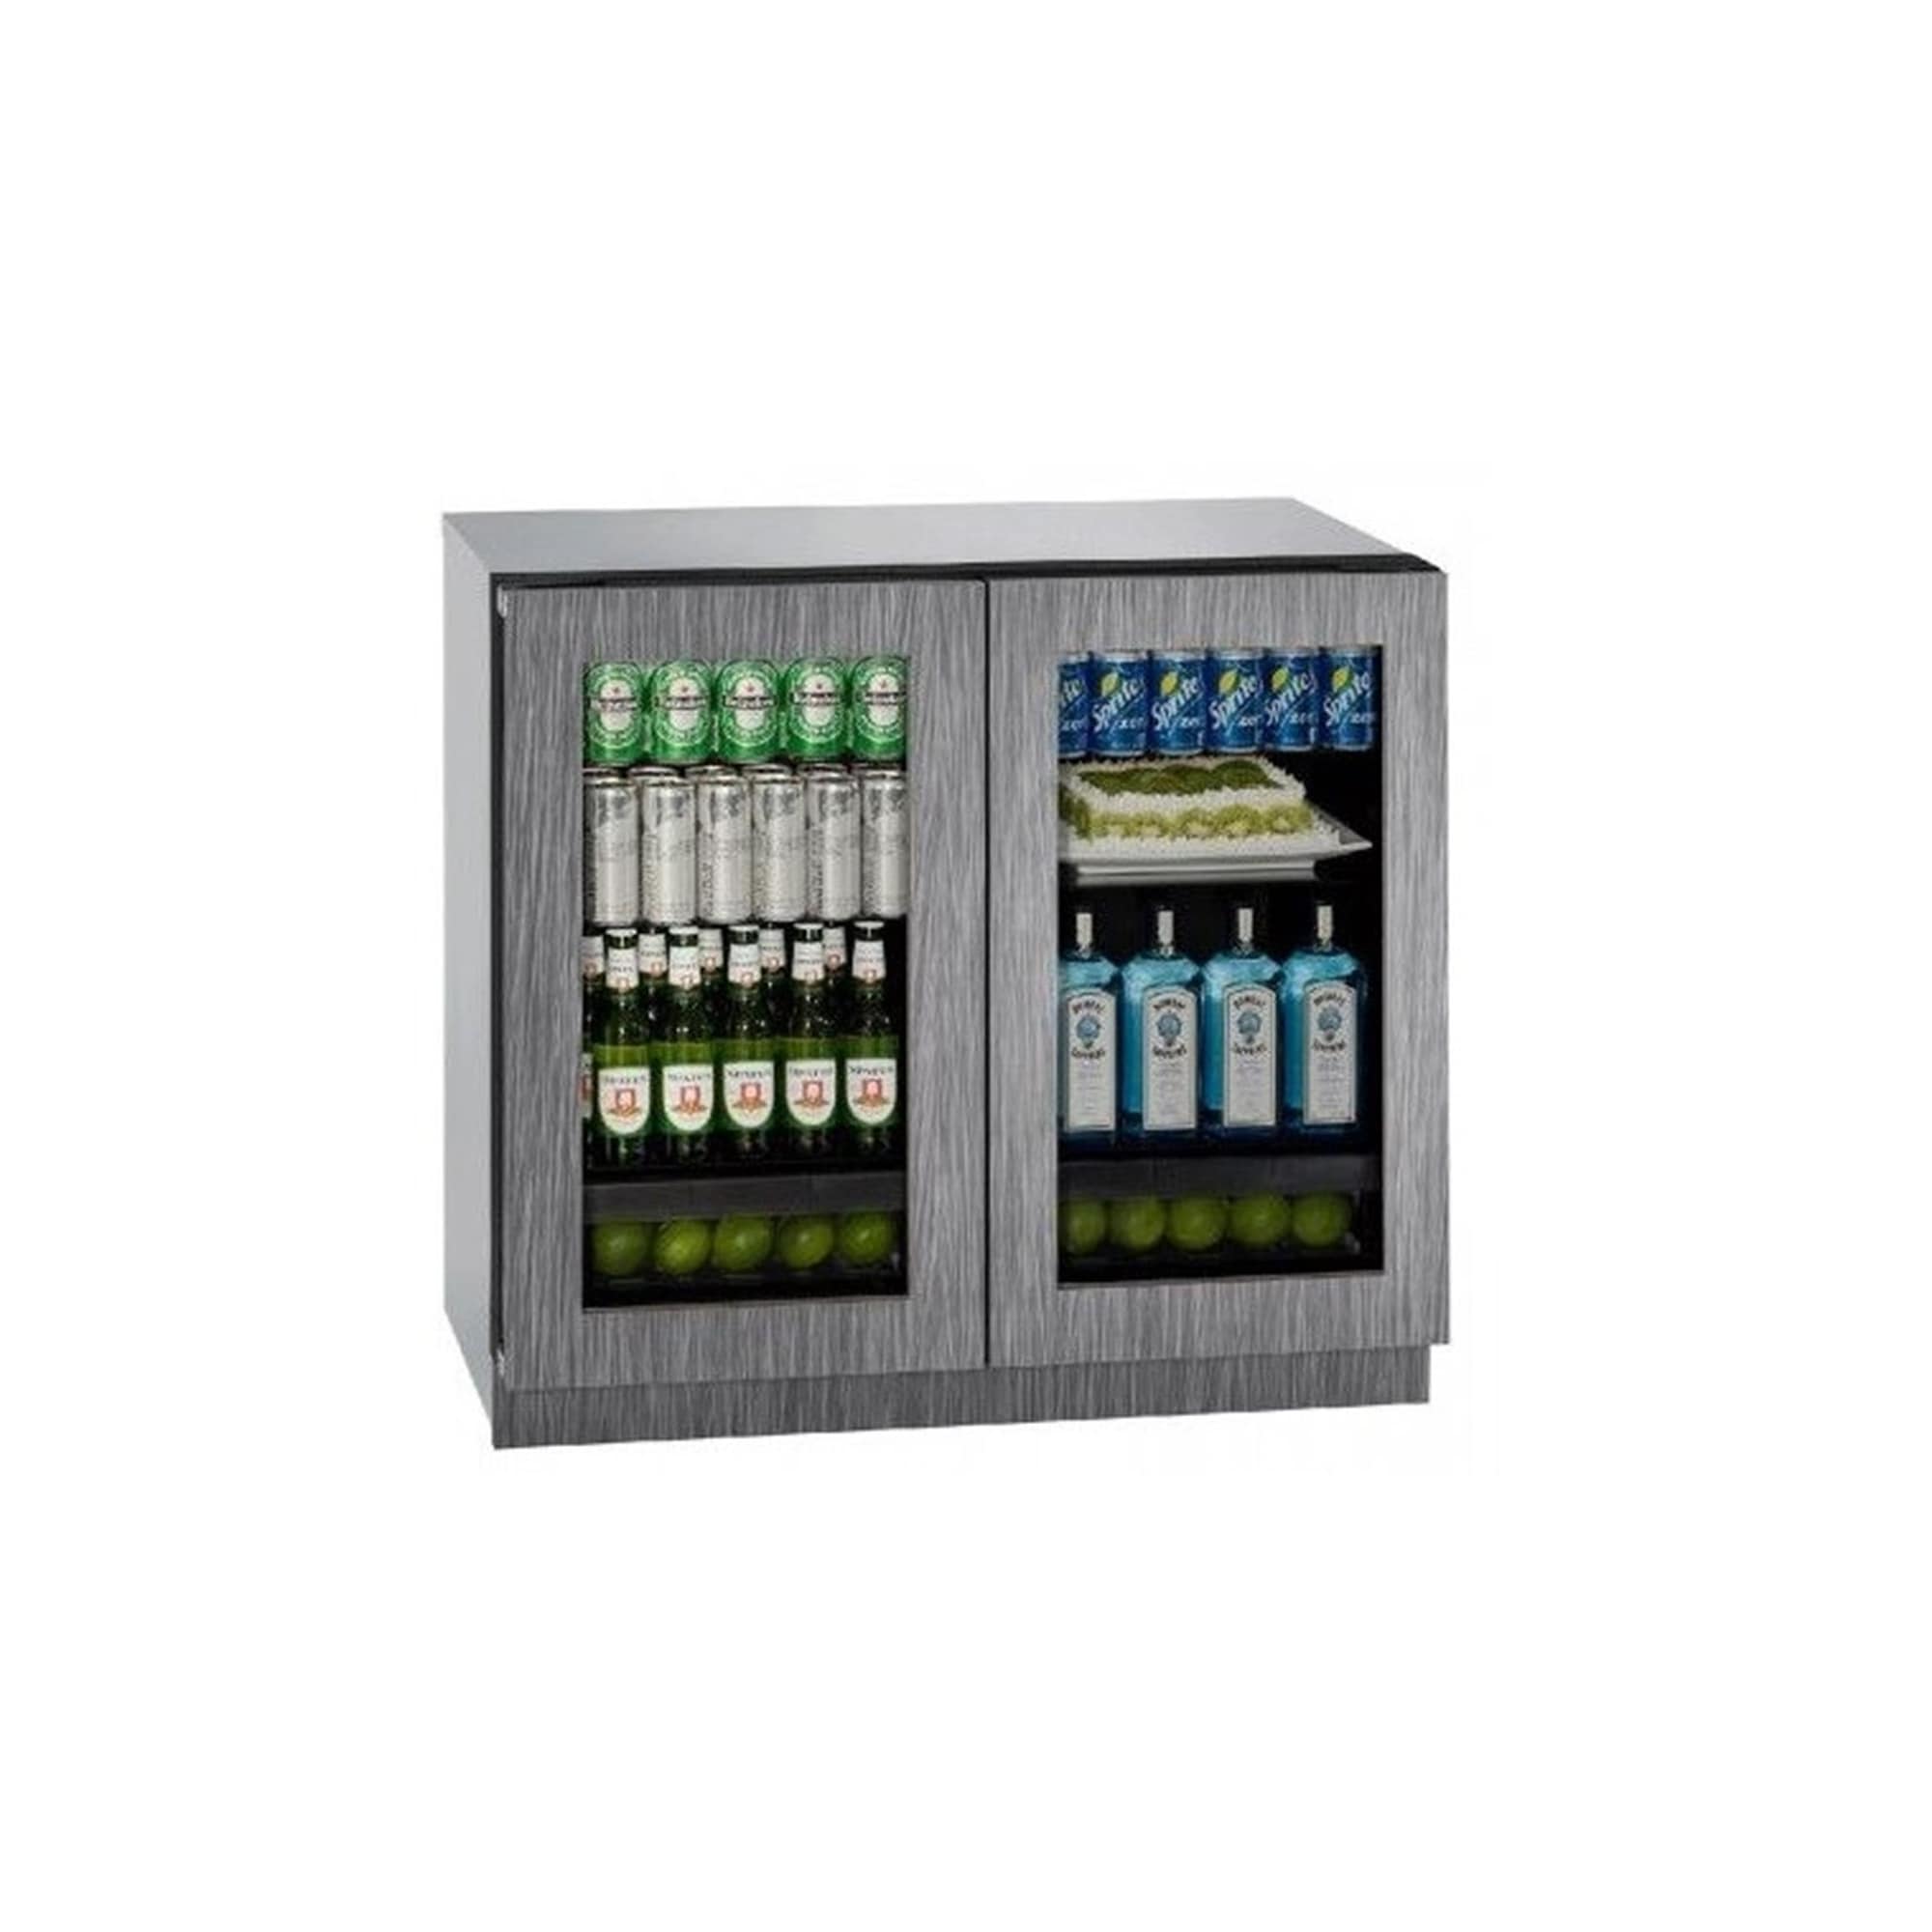 6.9 cu. ft. Built-In Refrigerator, Frame Overlay - 36